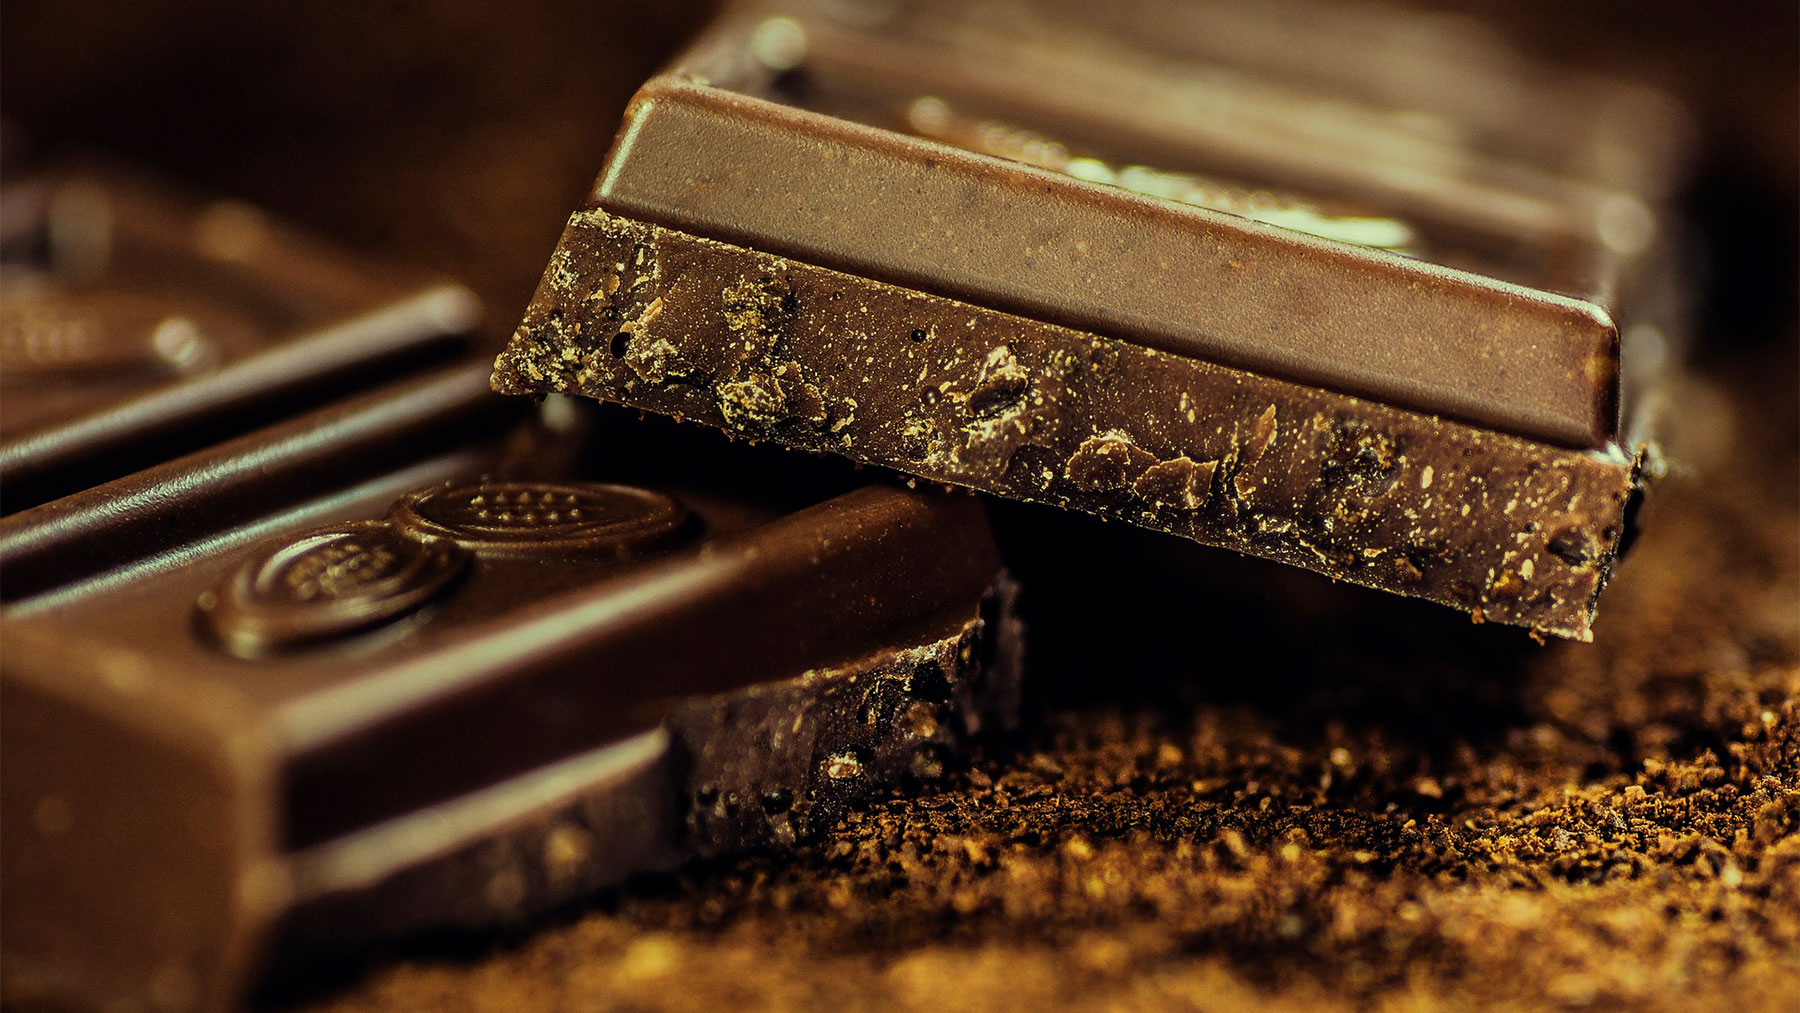 El cacao es un alimento rico en polifenoles con propiedades antioxidantes, antiinflamatorias y cardioprotectoras.